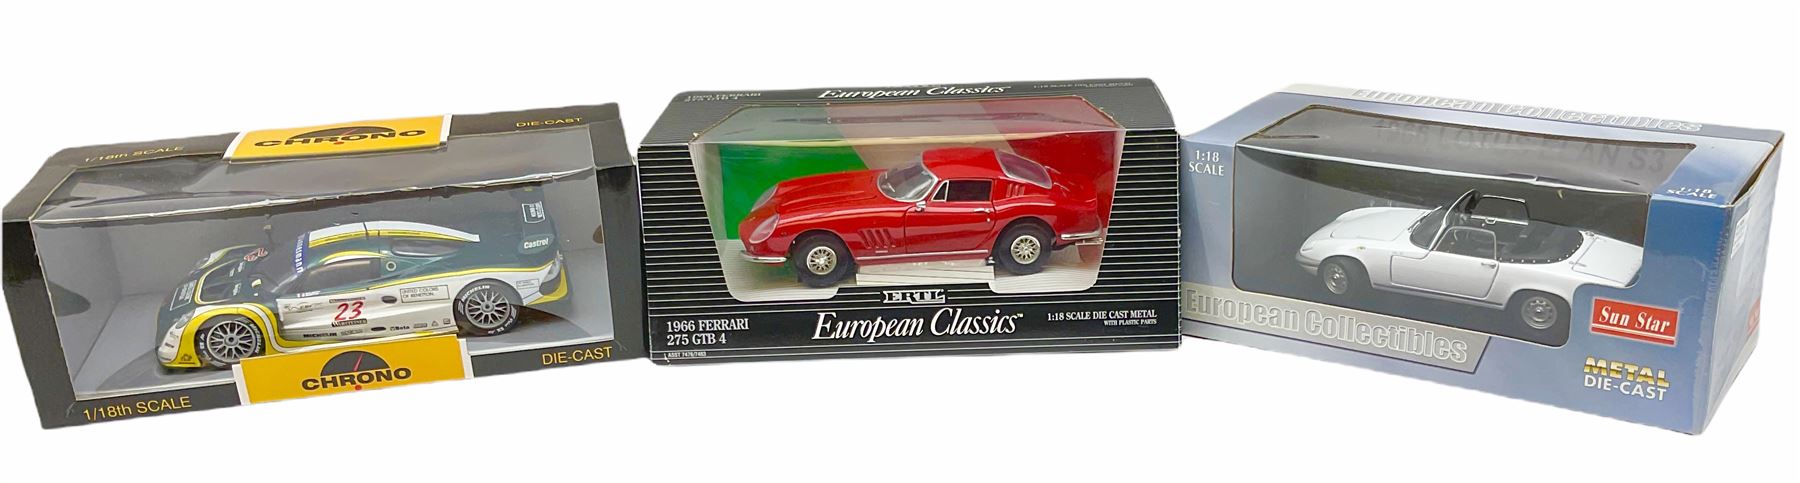 Three 1:18th scale die-cast models - Sun Star European Collectibles1966 Lotus Elan S3; ERTL European